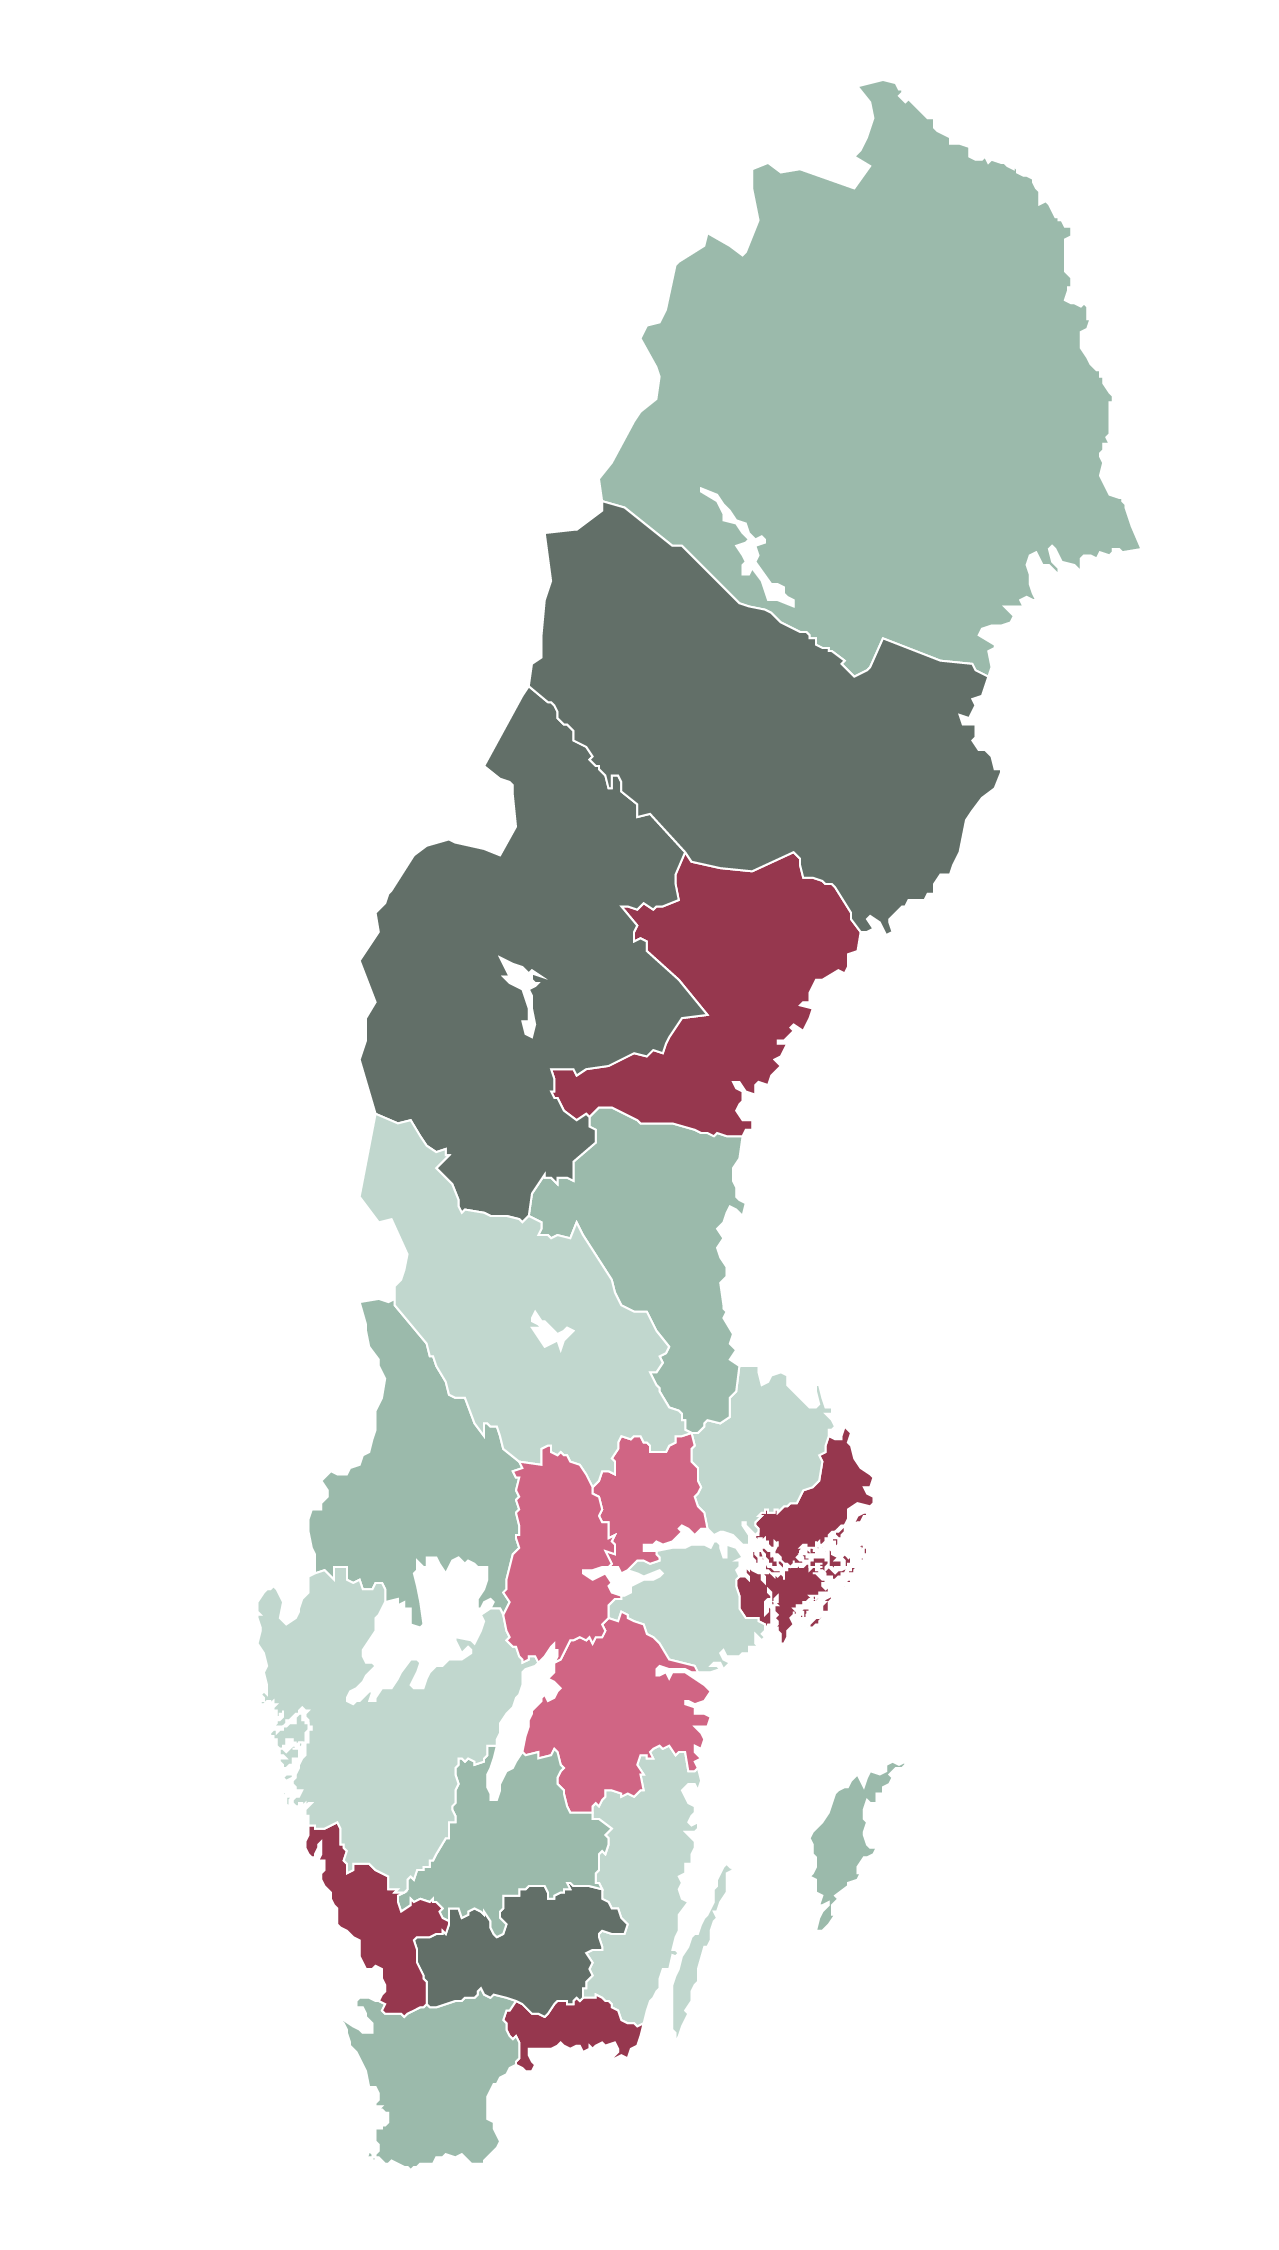 En tecknad Sverige-karta där länen har olika färger. 